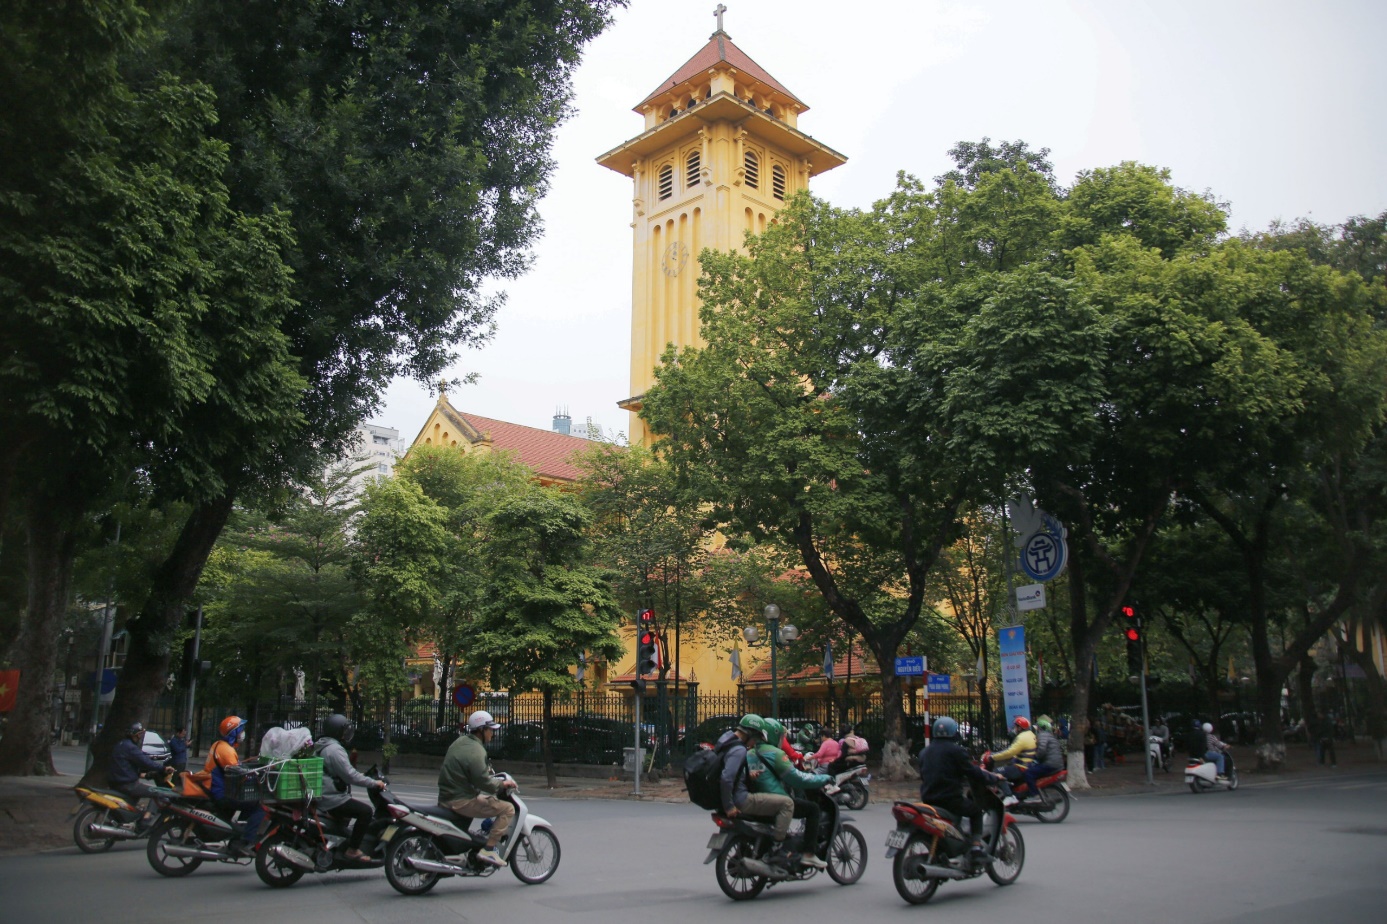 Kiến trúc độc đáo hiếm thấy, nhà thờ cổ nổi tiếng ở Hà Nội hút du khách chụp ảnh - 14